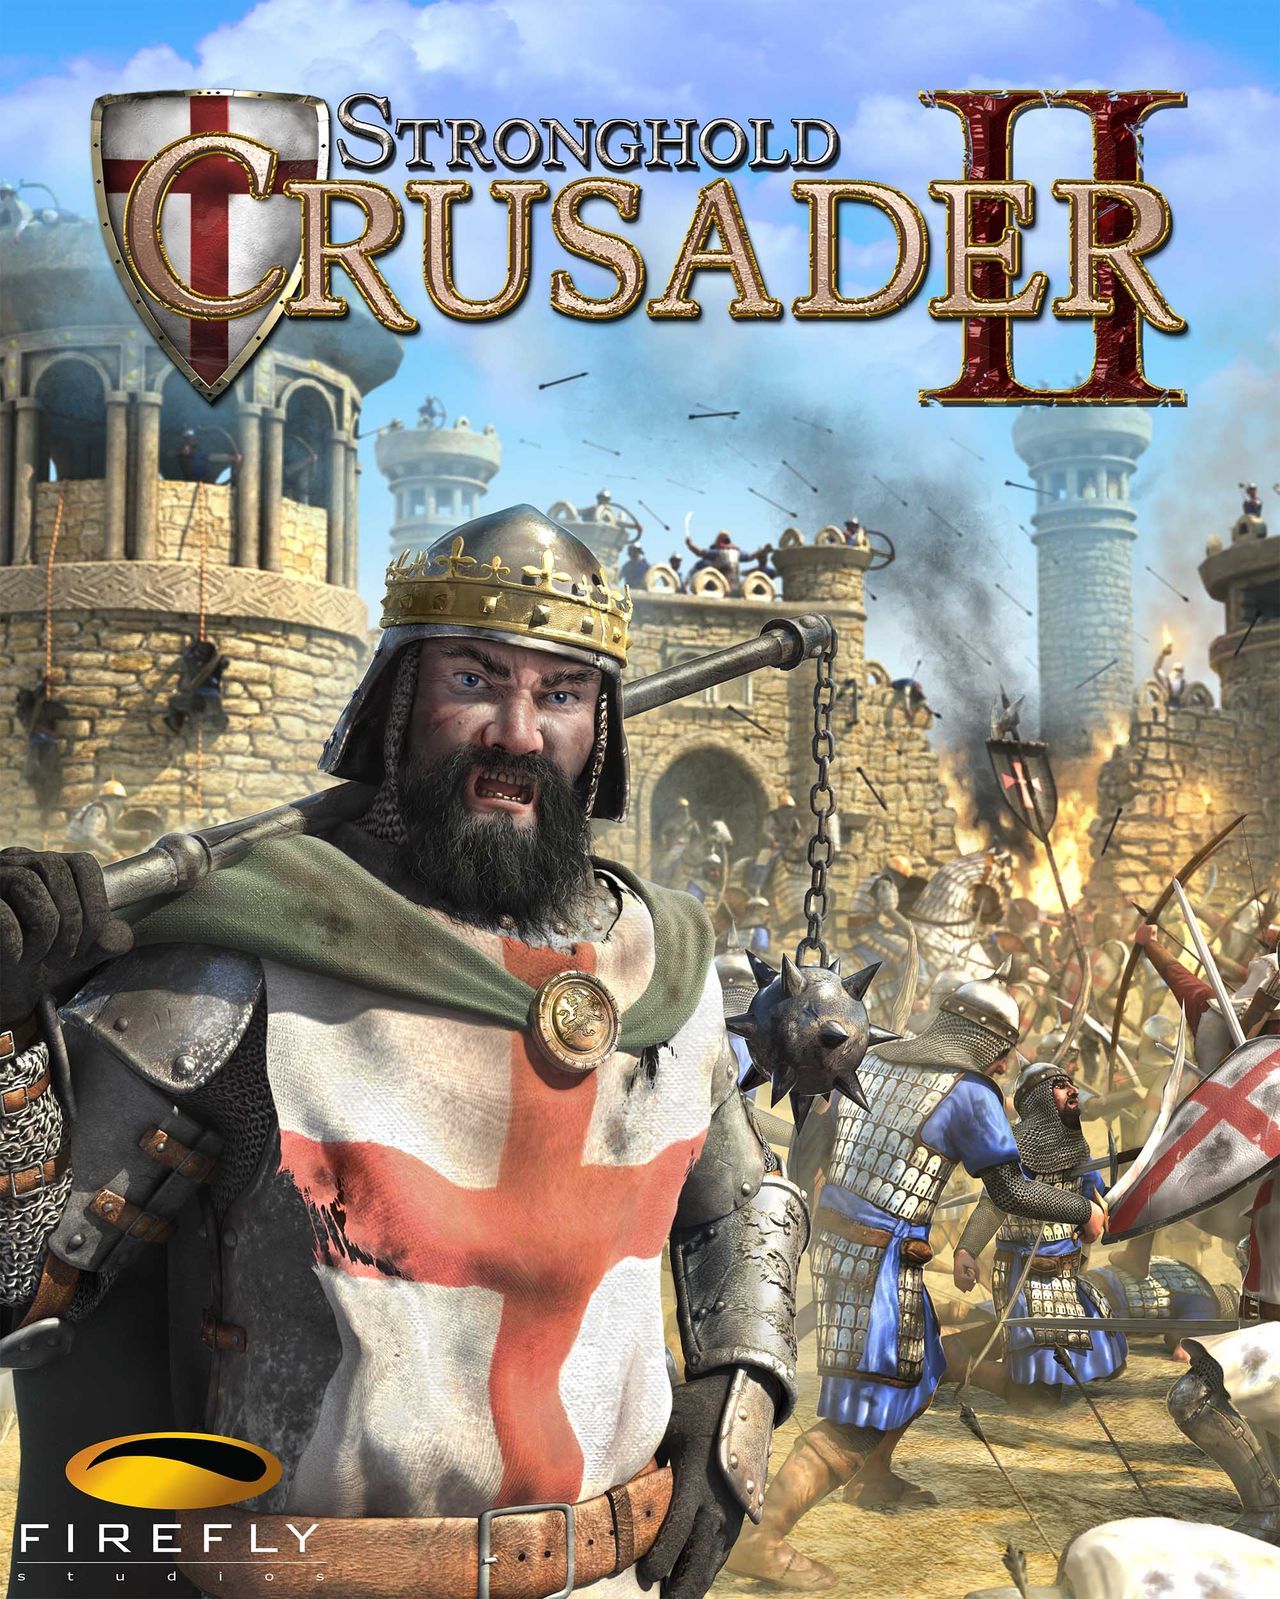 Resultado de imagen para Stronghold crusader ii portada